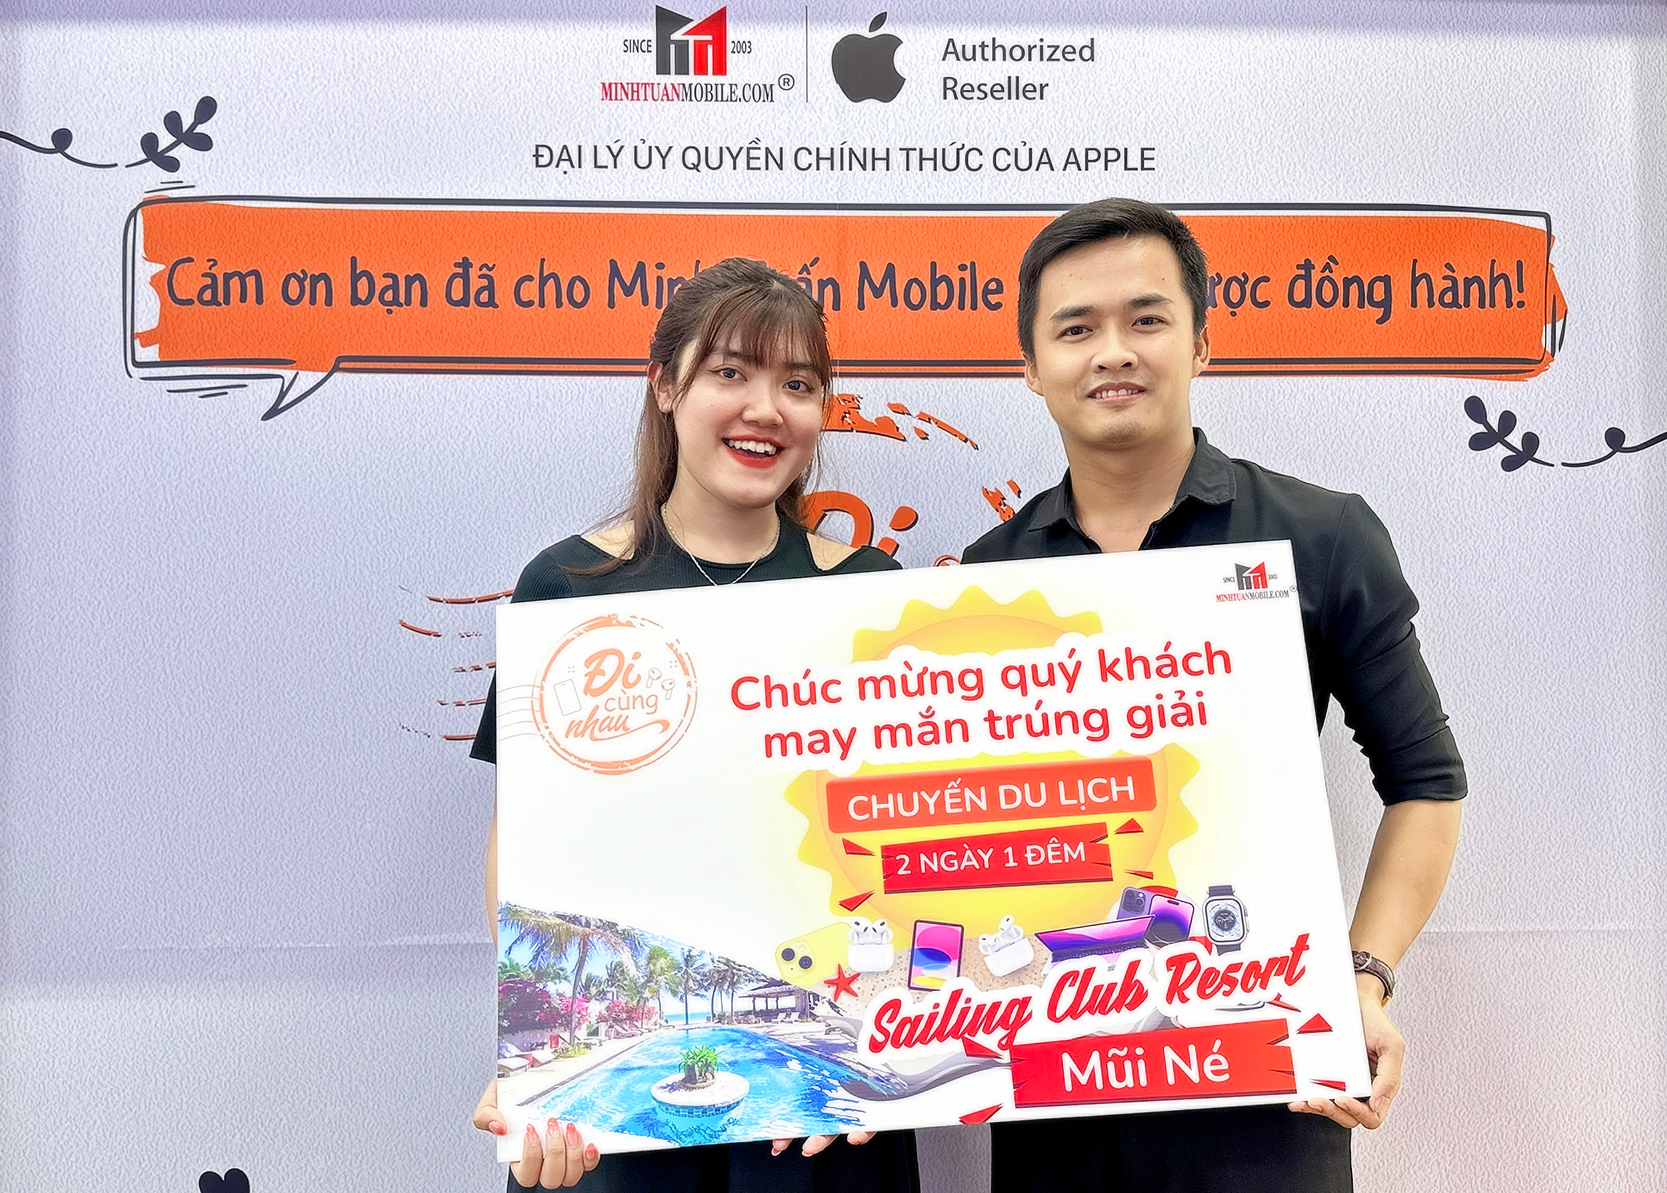 Minh Tuấn Mobile tìm ra vị khách may mắn trúng chuyến du lịch Mũi Né